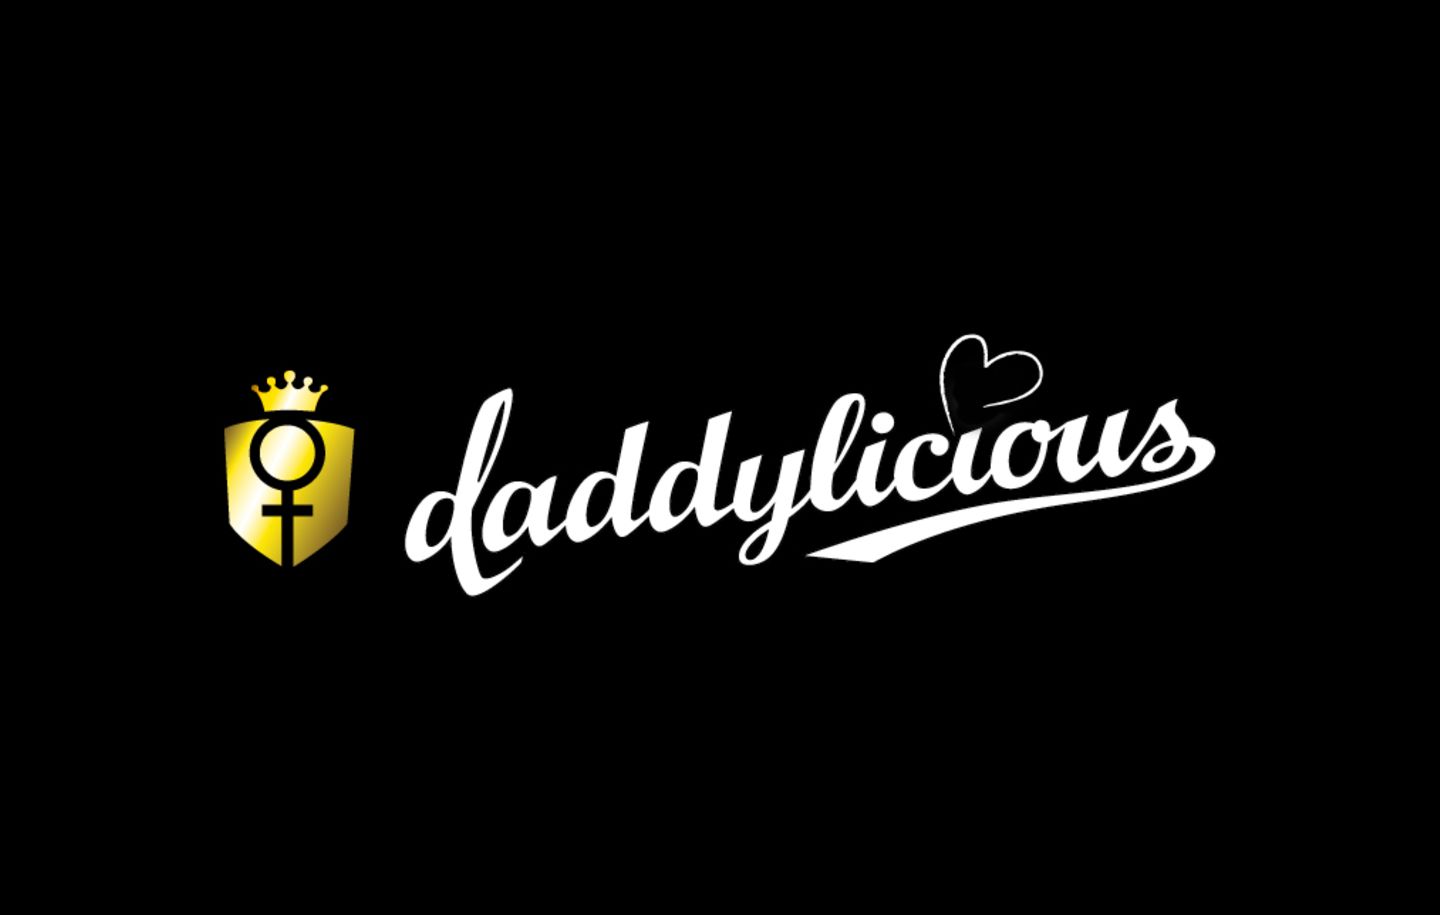 Daddylicious: Frauenmagazin EMMA kauft DADDYlicious.de